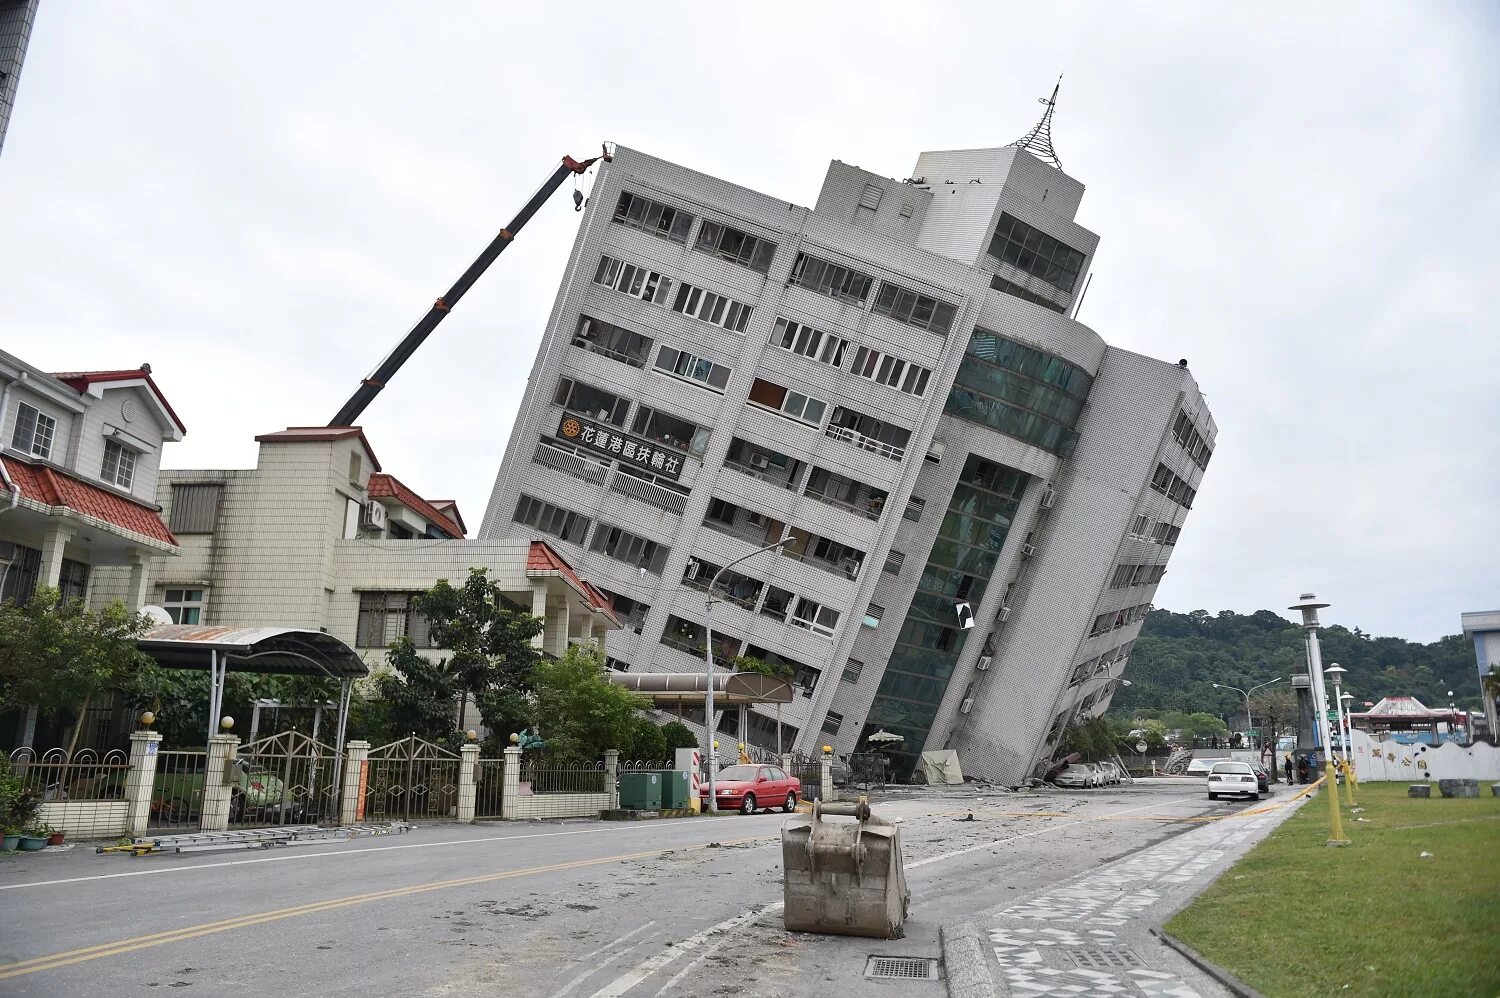 Гостиница Маршал Тайвань землетрясение. Землетрясение на Тайване 1999. Землетрясение Хуалянь. Гостиница Маршал Тайвань. Землетрясение tsmc